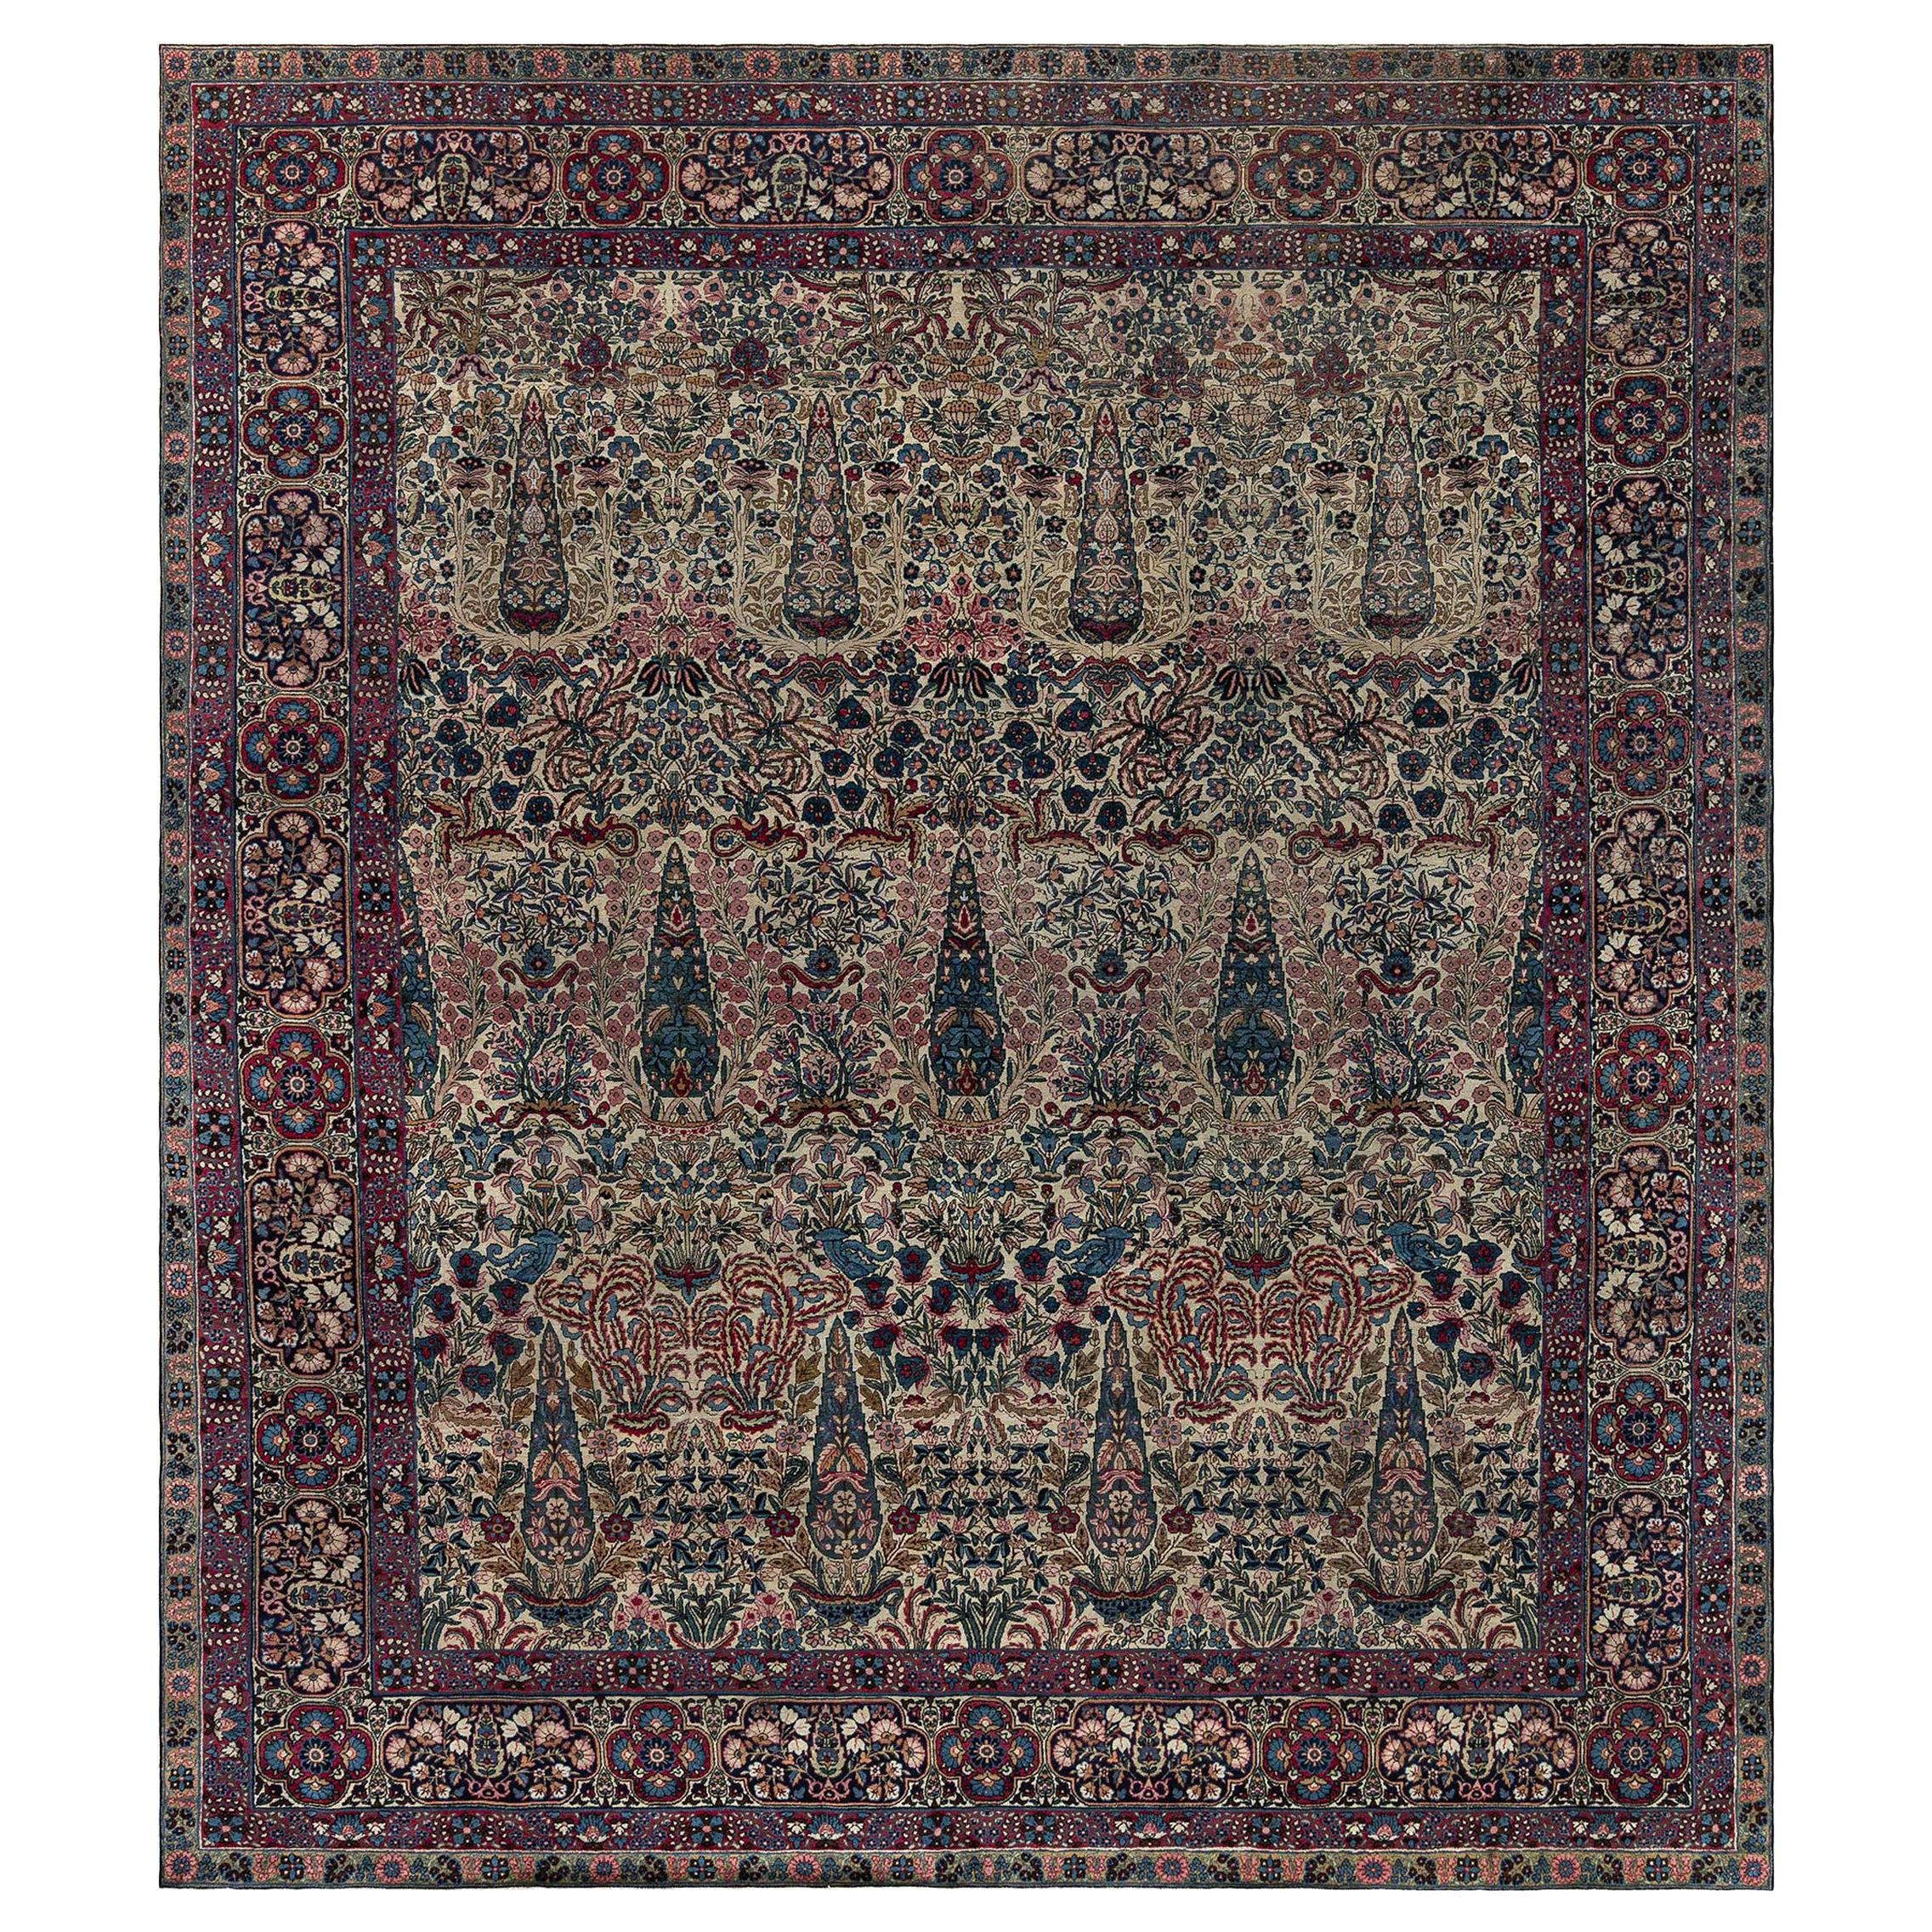 Early 20th Century Persian Kirman Wool Rug